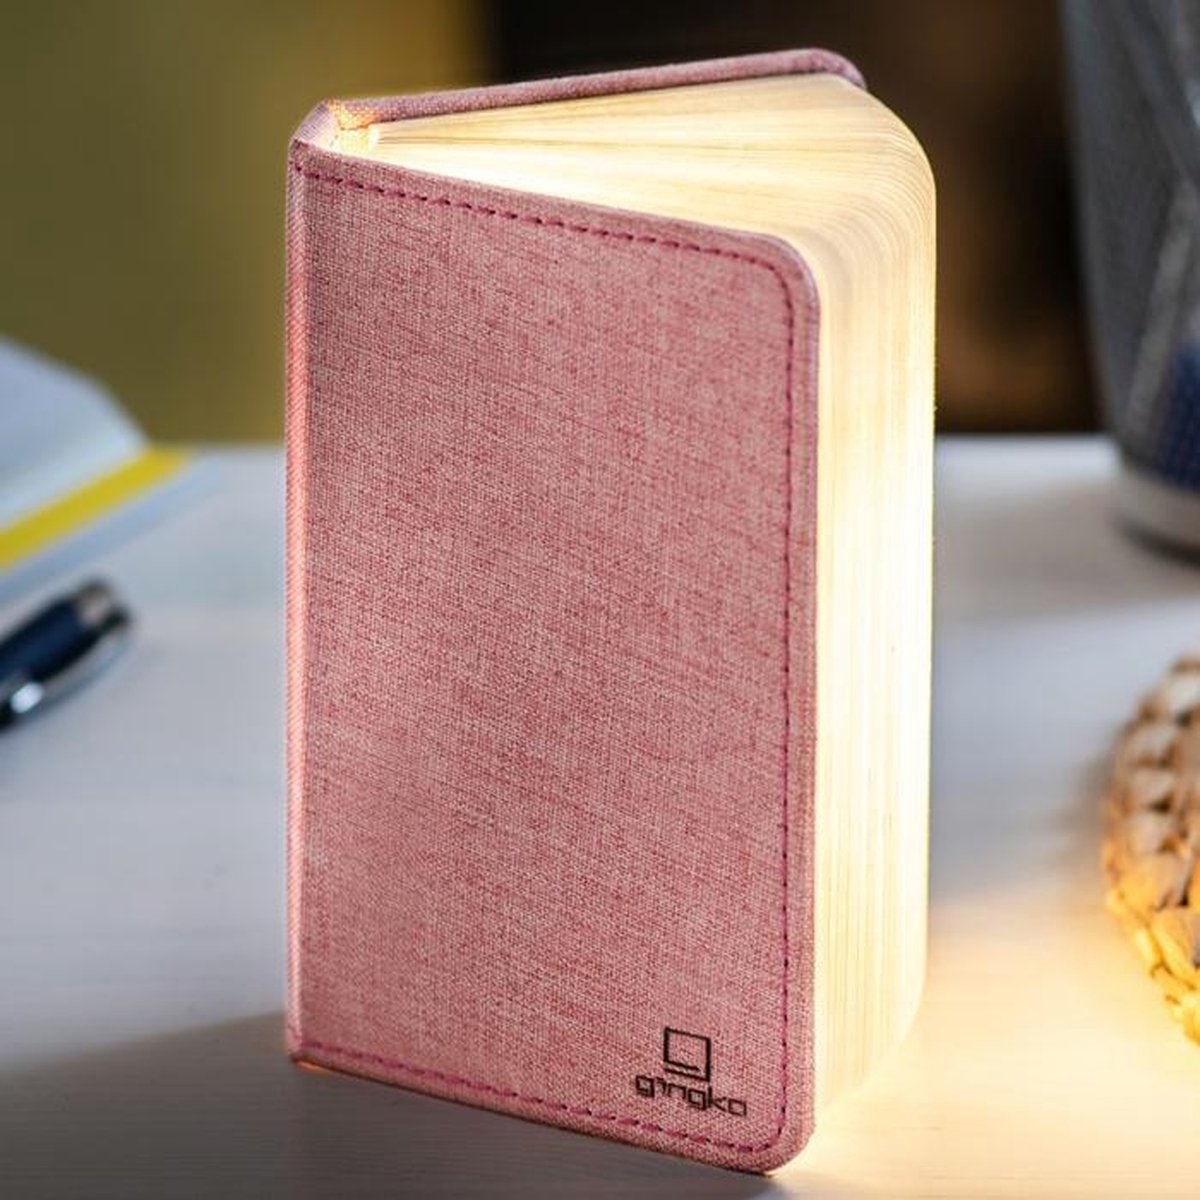 Gingko Mini Smart LED Book Light - roze stof